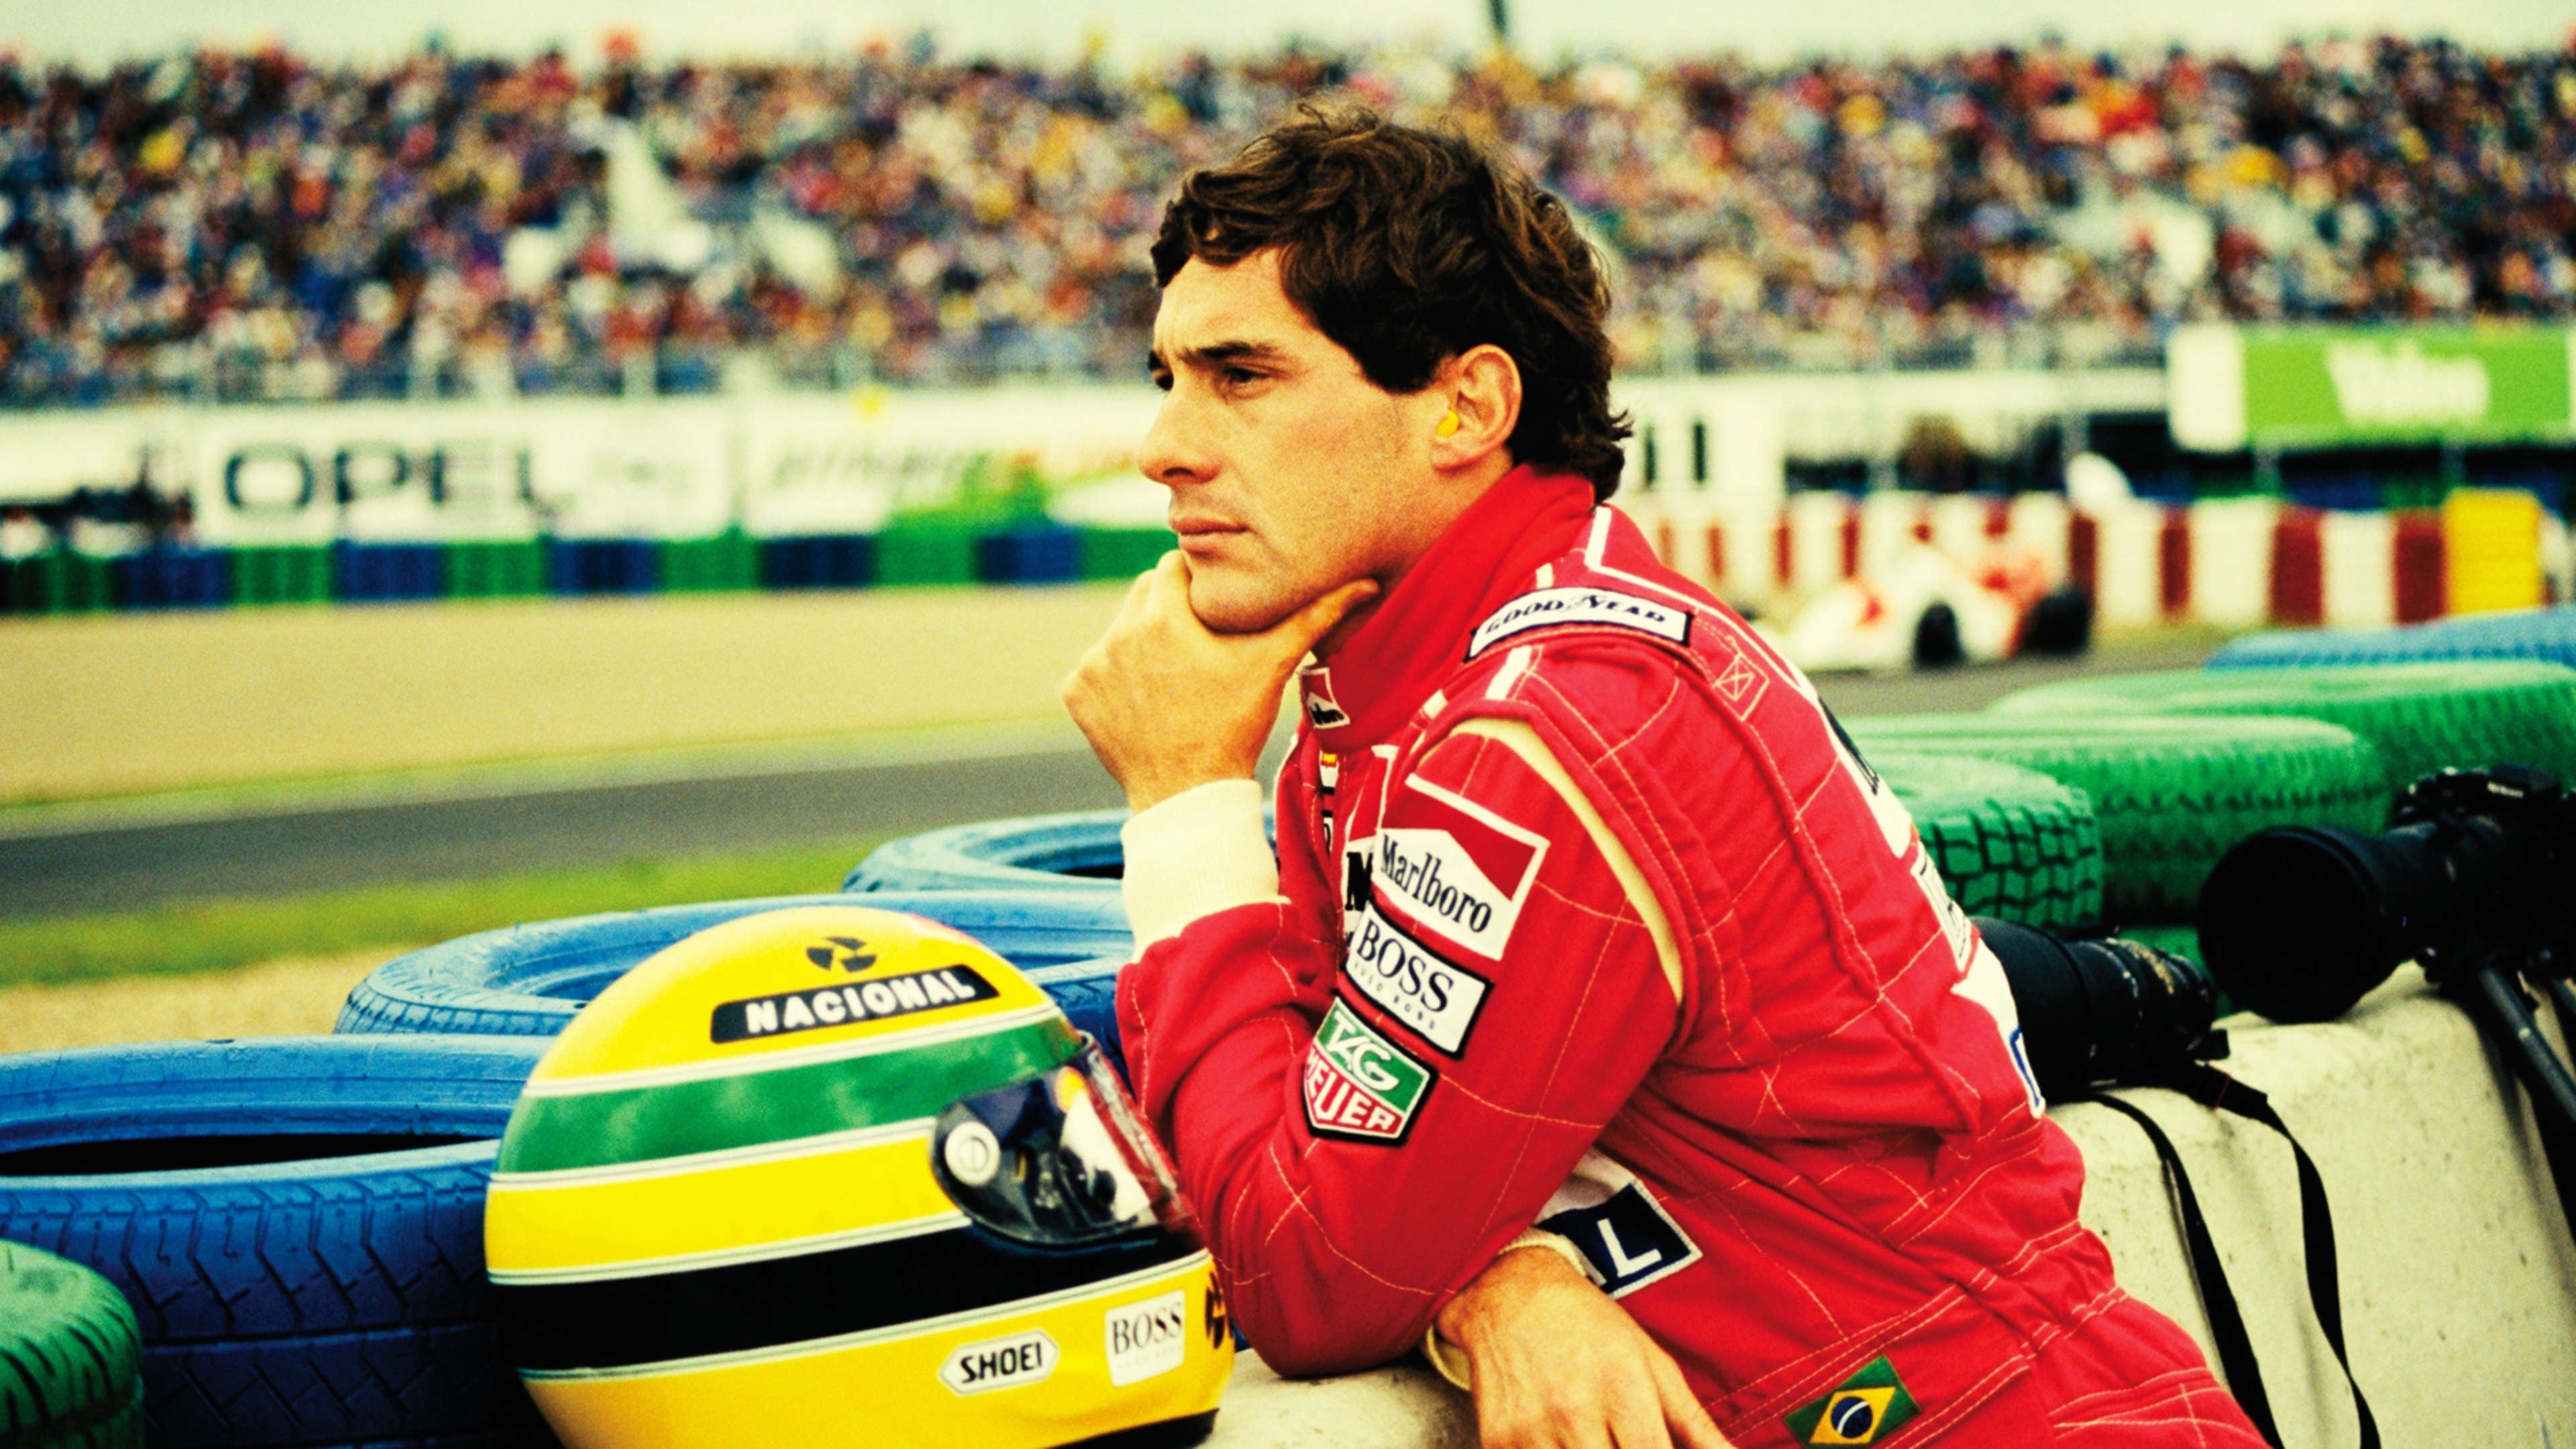 Poster Phim Senna (Senna)